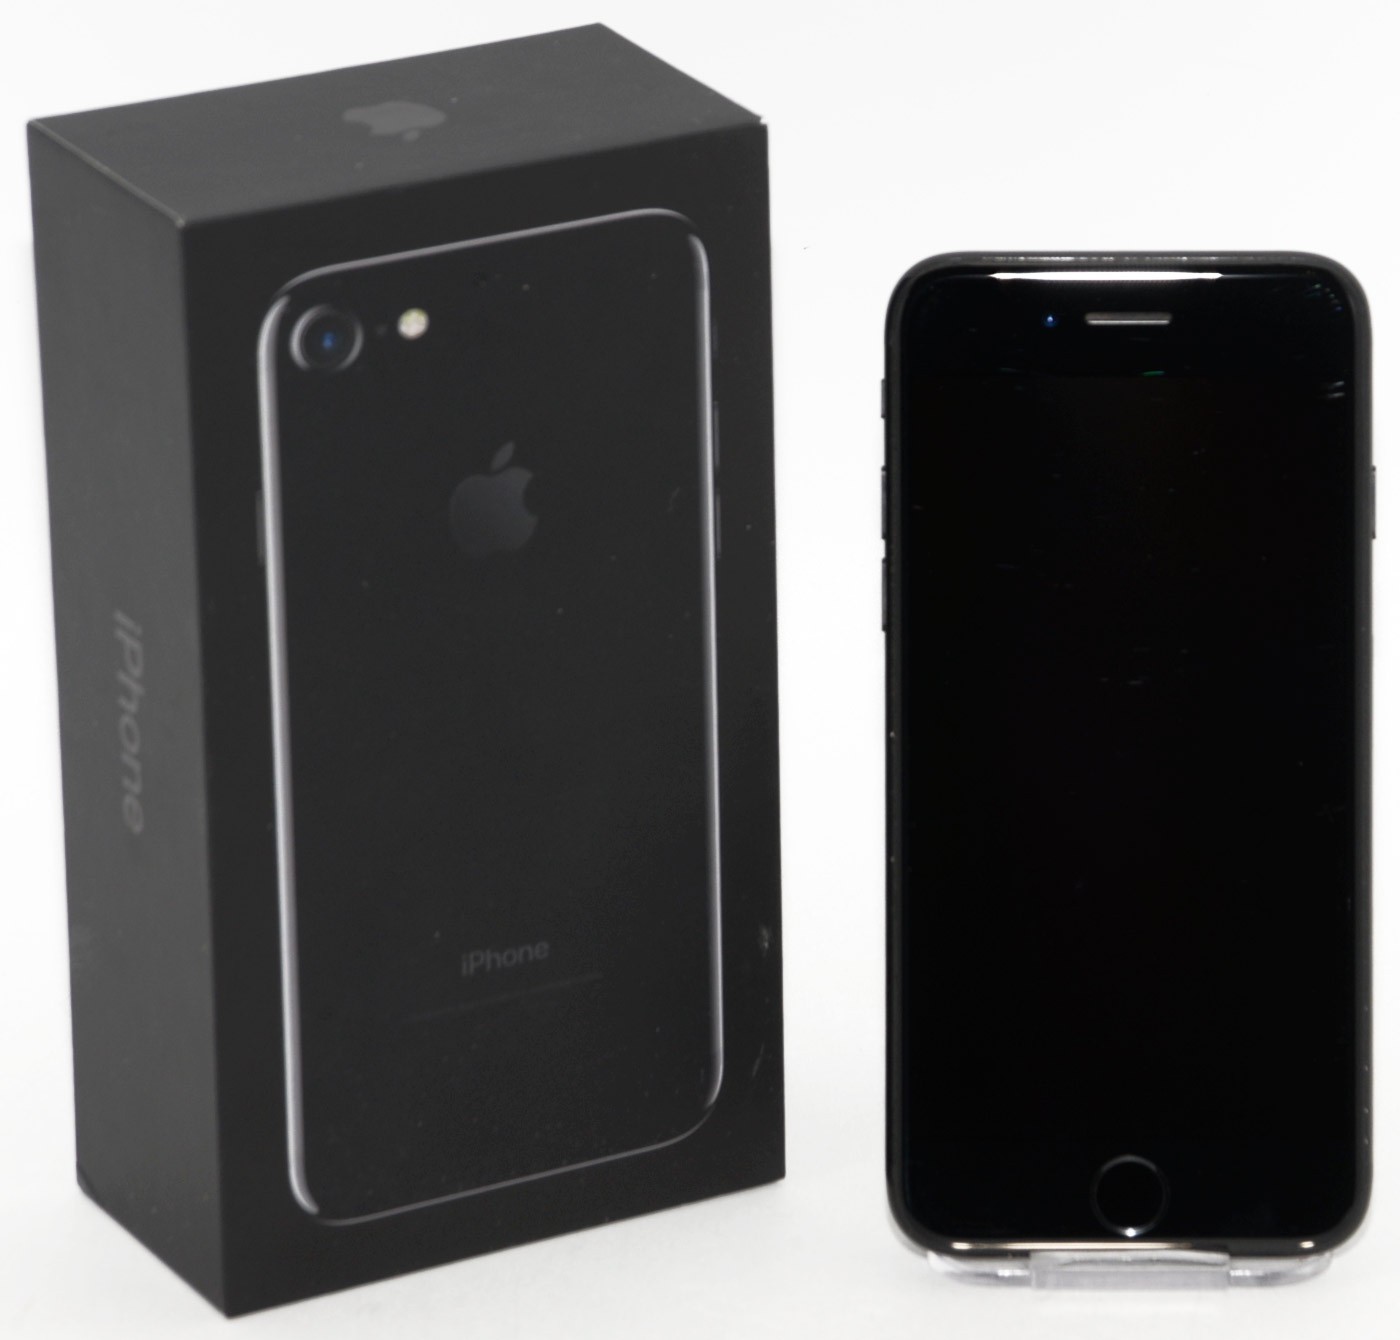 iPhone 7 128 GB negro brillante